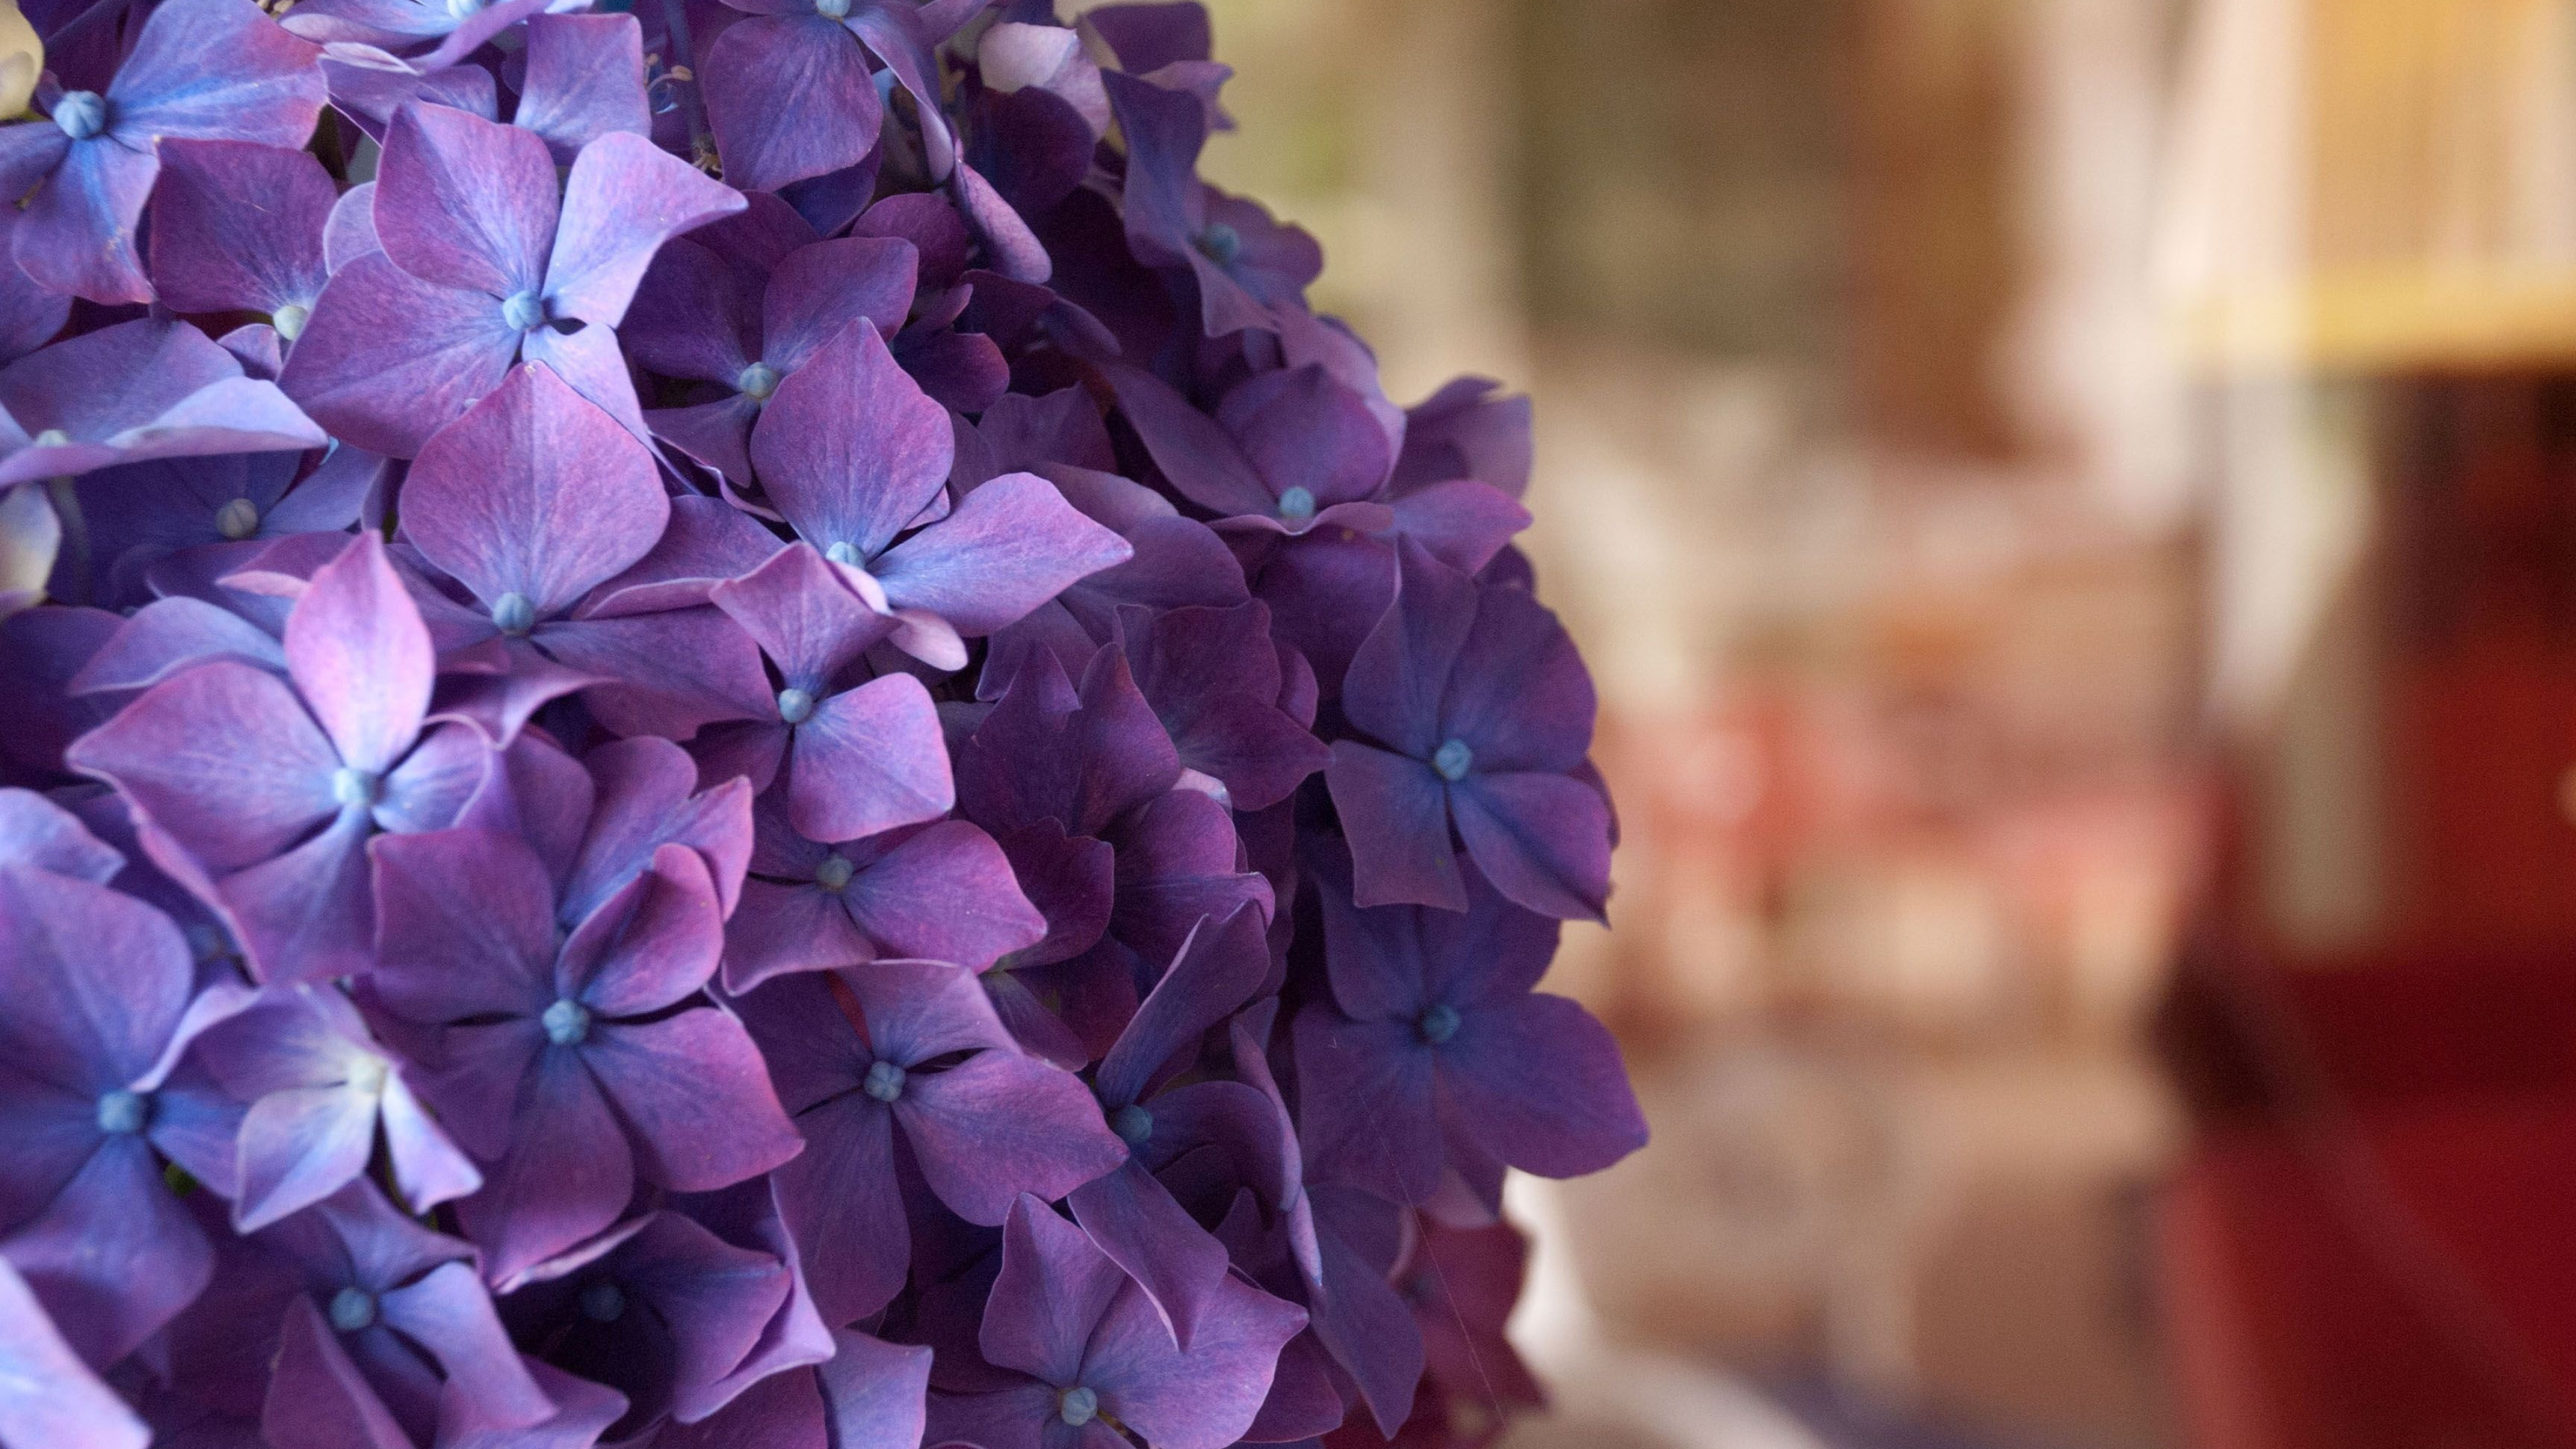 Purple hydrangea, Nature's beauty, Floral elegance, Vibrant colors, 3840x2160 4K Desktop